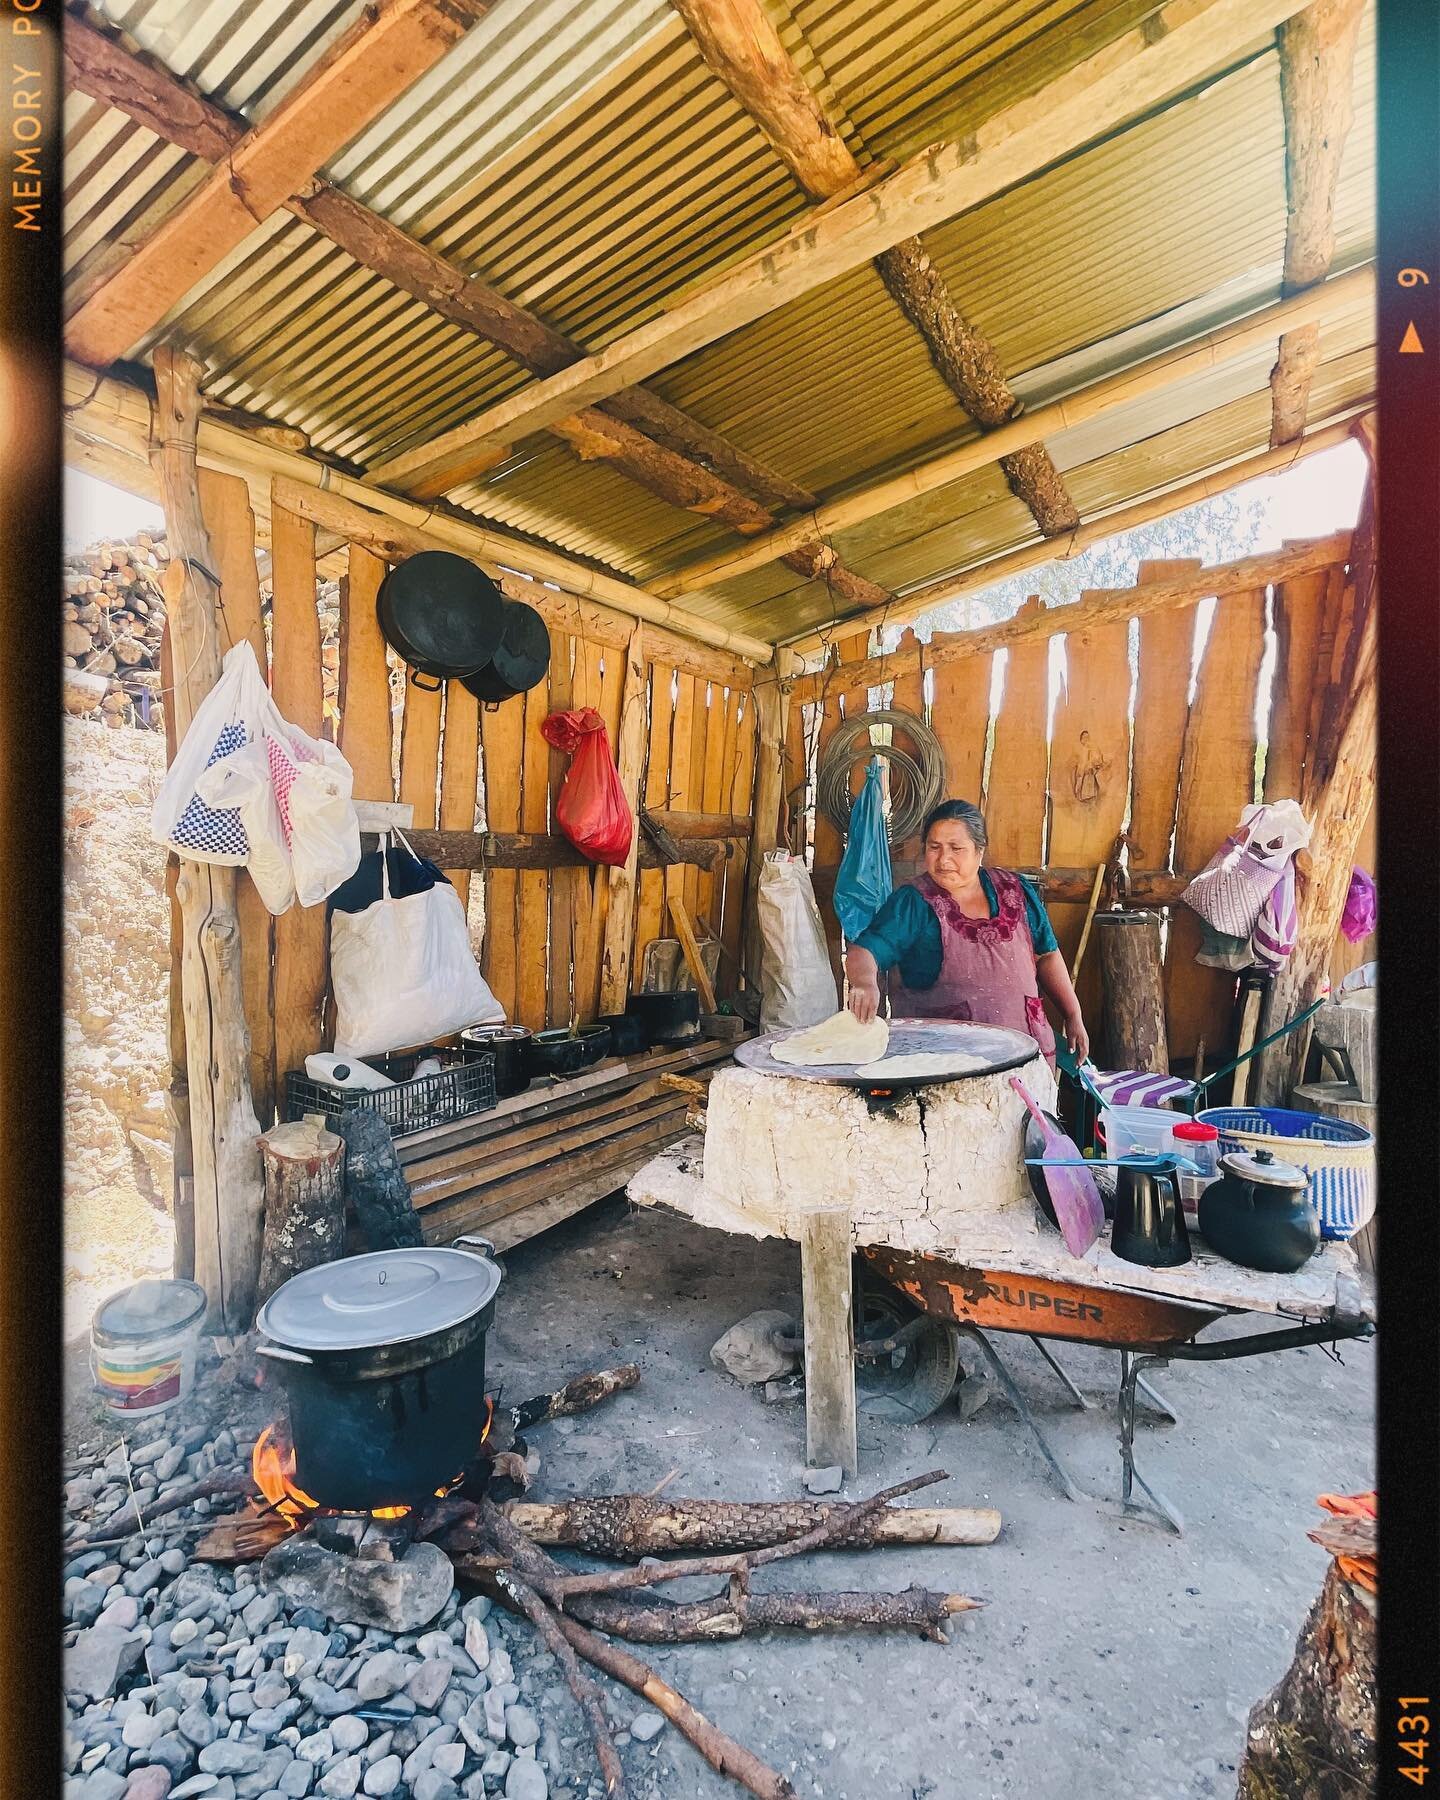 Un palenque Mezcalero con mujeres tiene otro saz&oacute;n #DiaInternacionalDeLaMujer #InternationalWomensday #ElCabron 

#Mujeres #Mezcal #Mexico #SaludCabrona #SaludCabron #Palenque #Craft #Kitchen #Cocina #Arte #Agave #Oaxaca